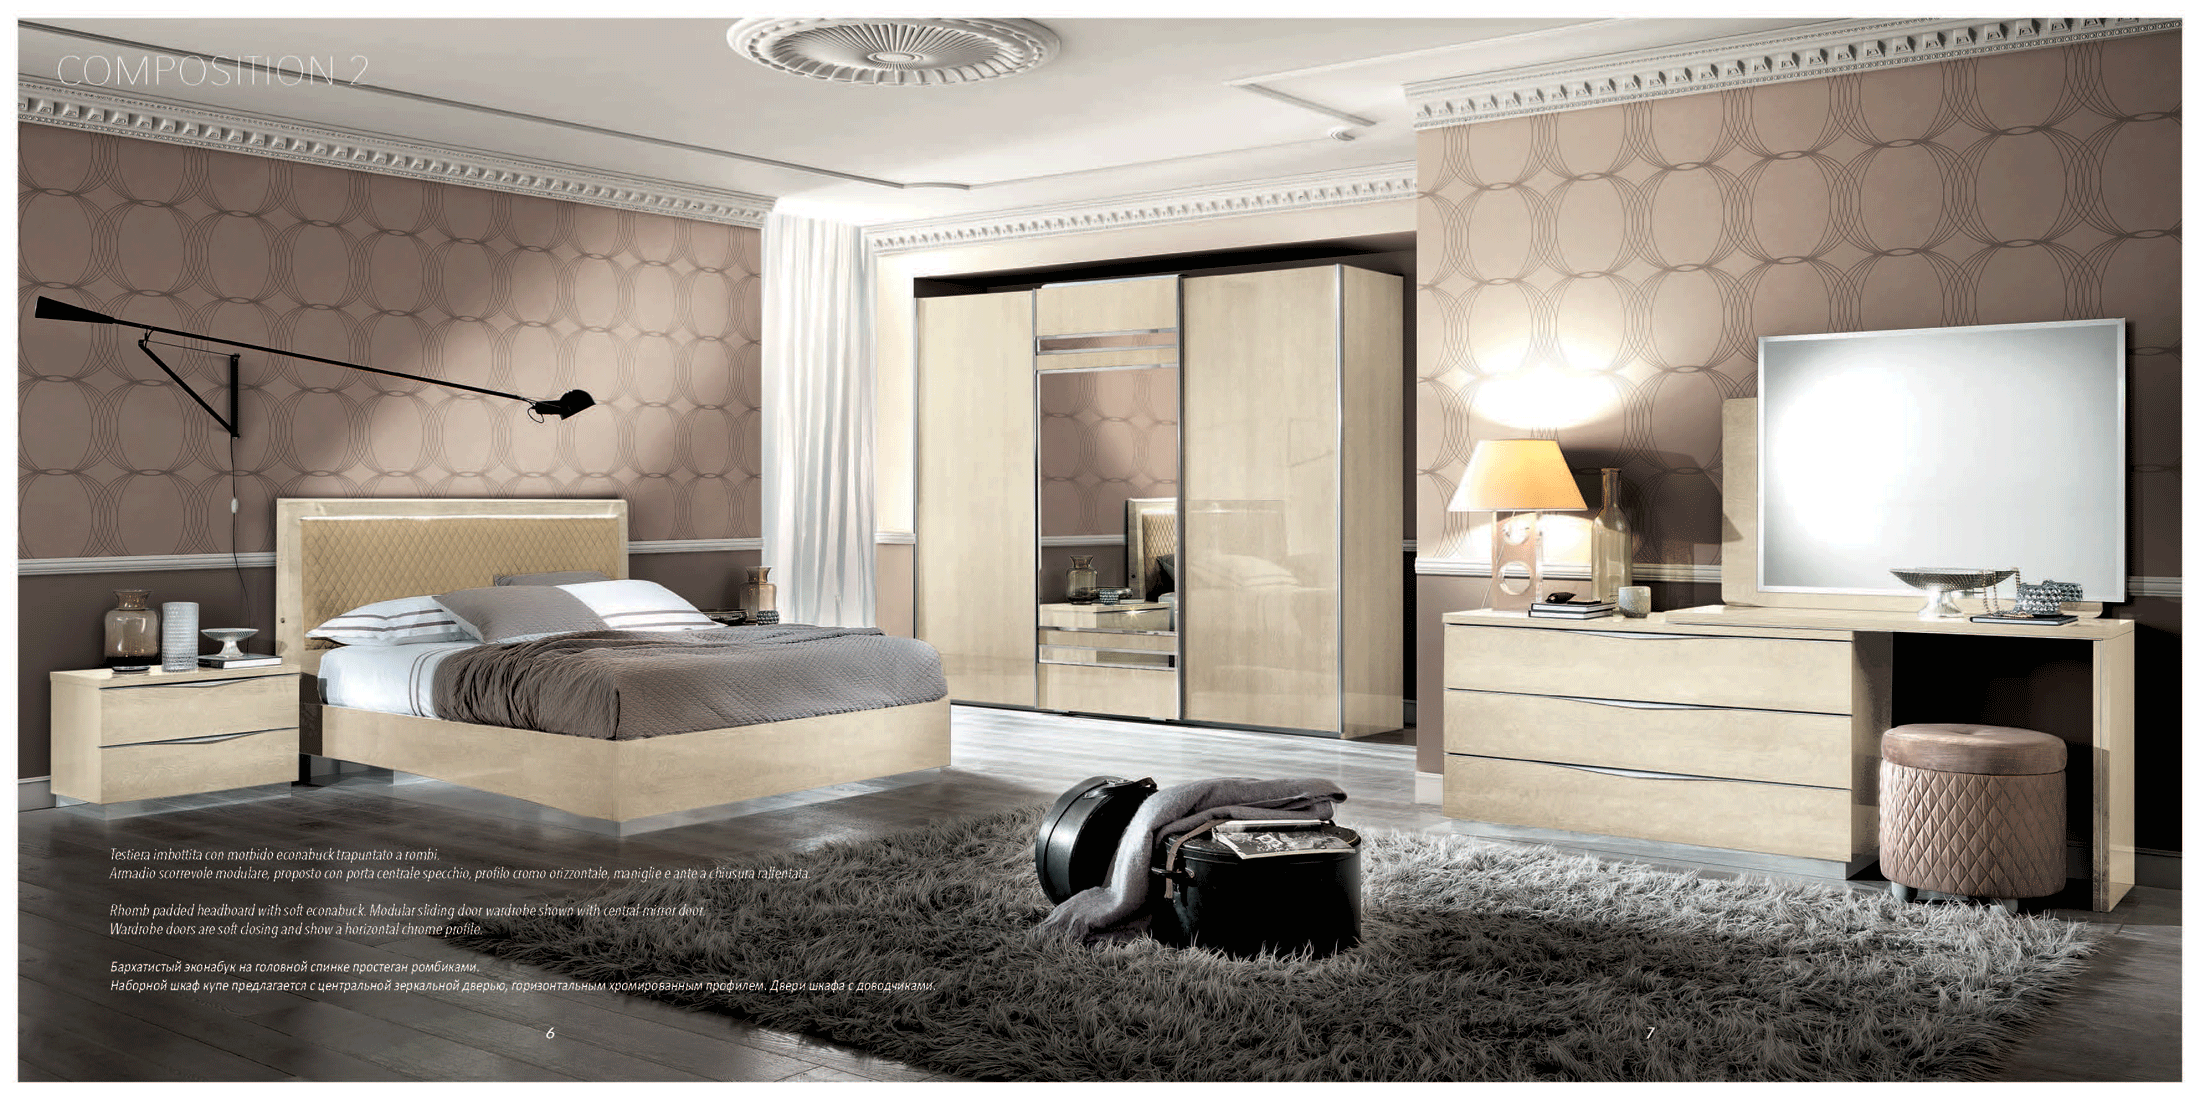 Bedroom Furniture Mirrors Platinum Additional Items IVORY BETULLIA SABBIA